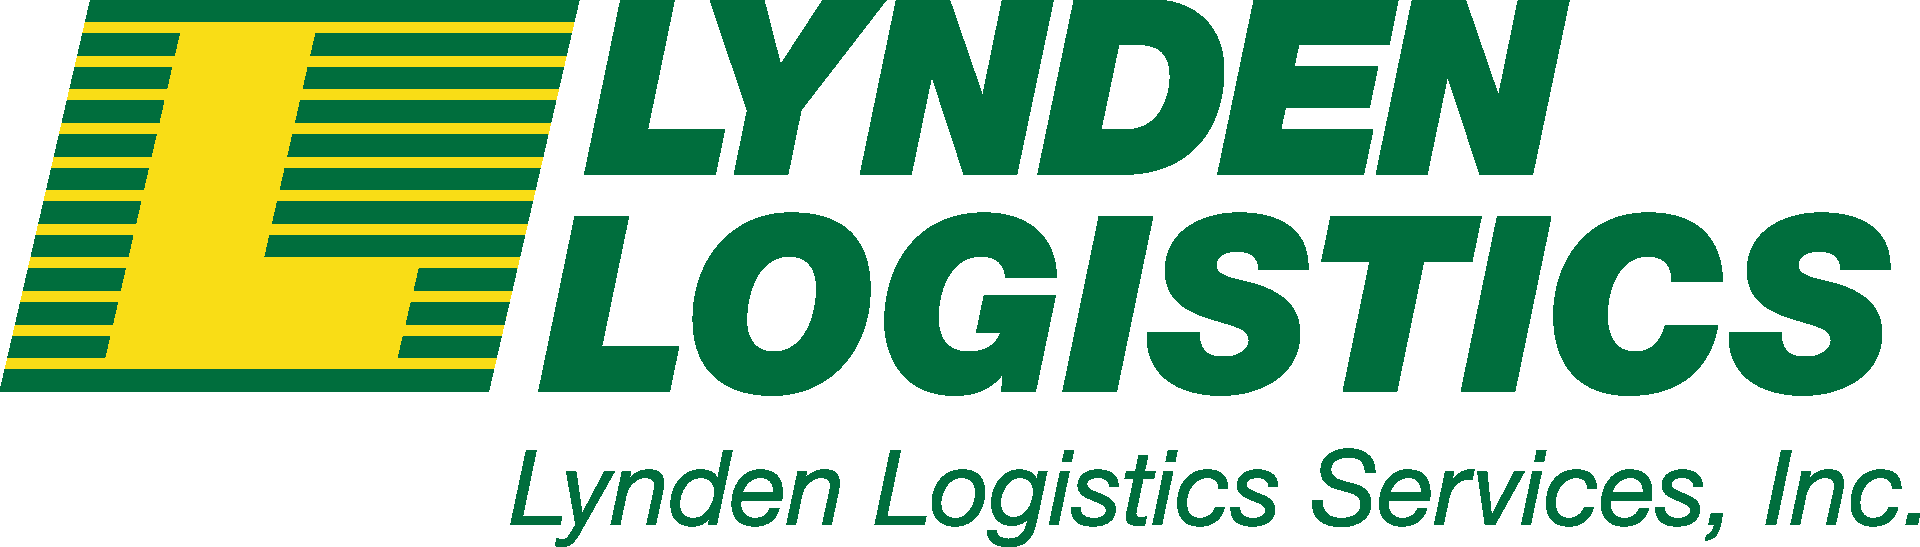 lynden logistics services logo